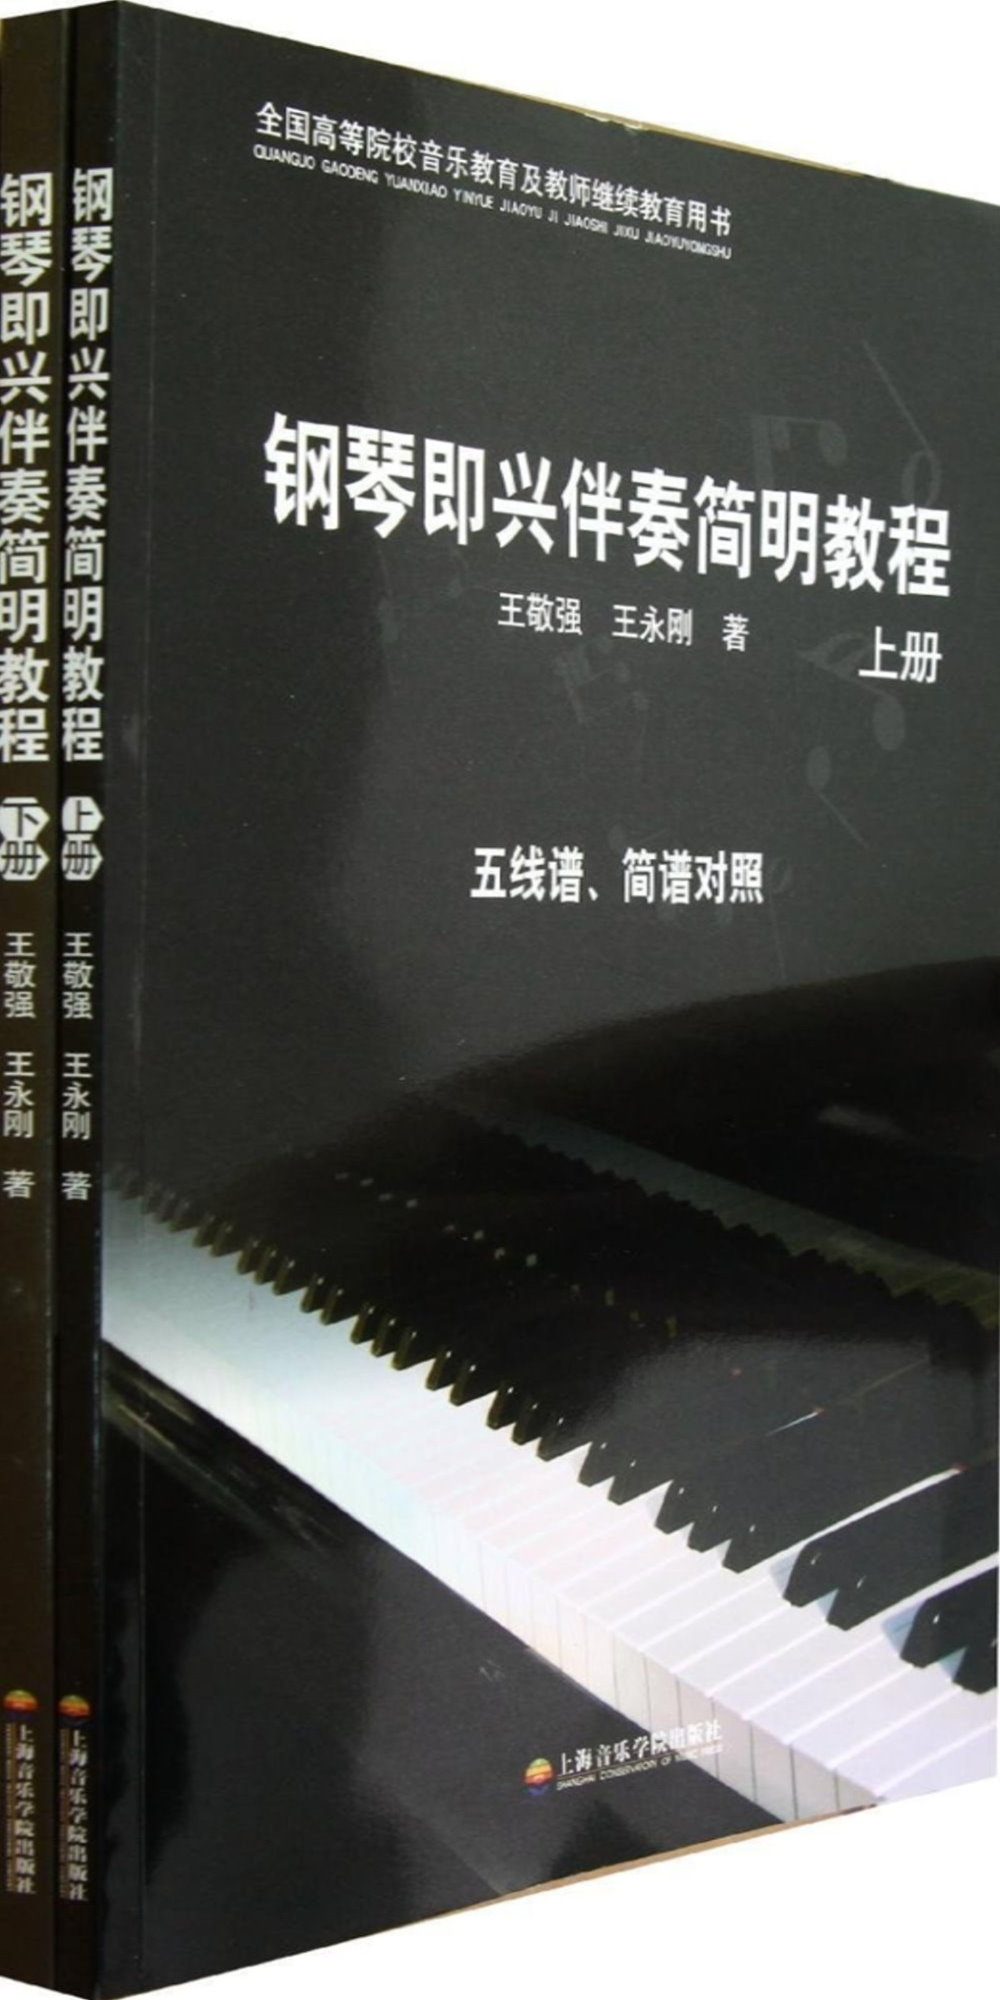 鋼琴即興伴奏簡明教程(上下)